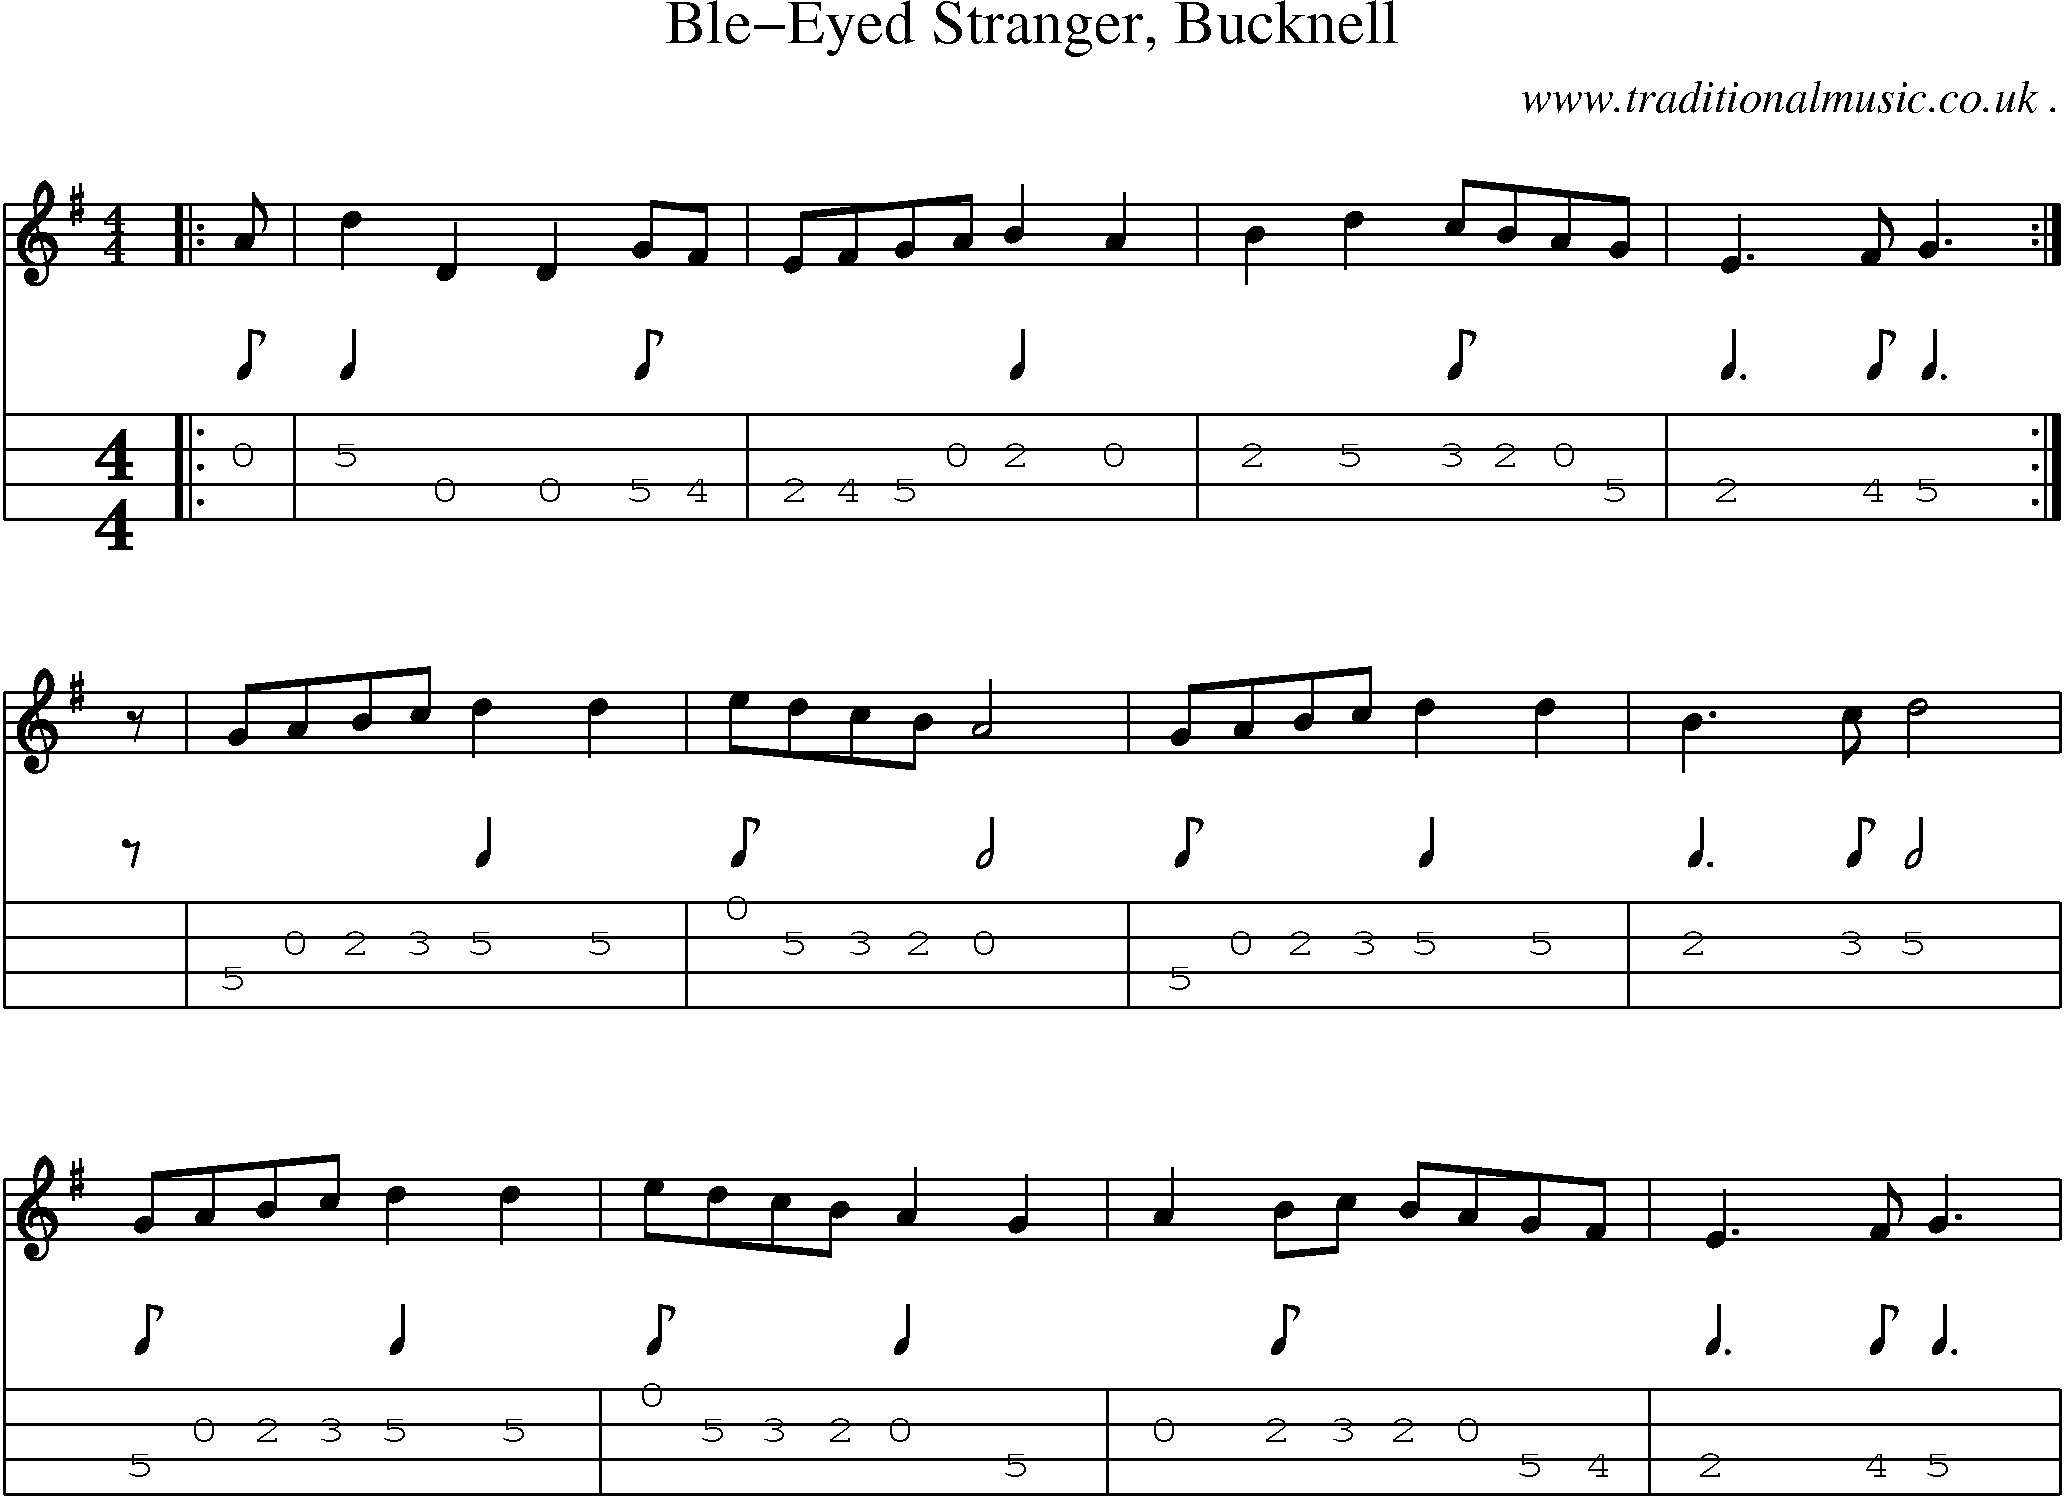 Sheet-Music and Mandolin Tabs for Ble-eyed Stranger Bucknell